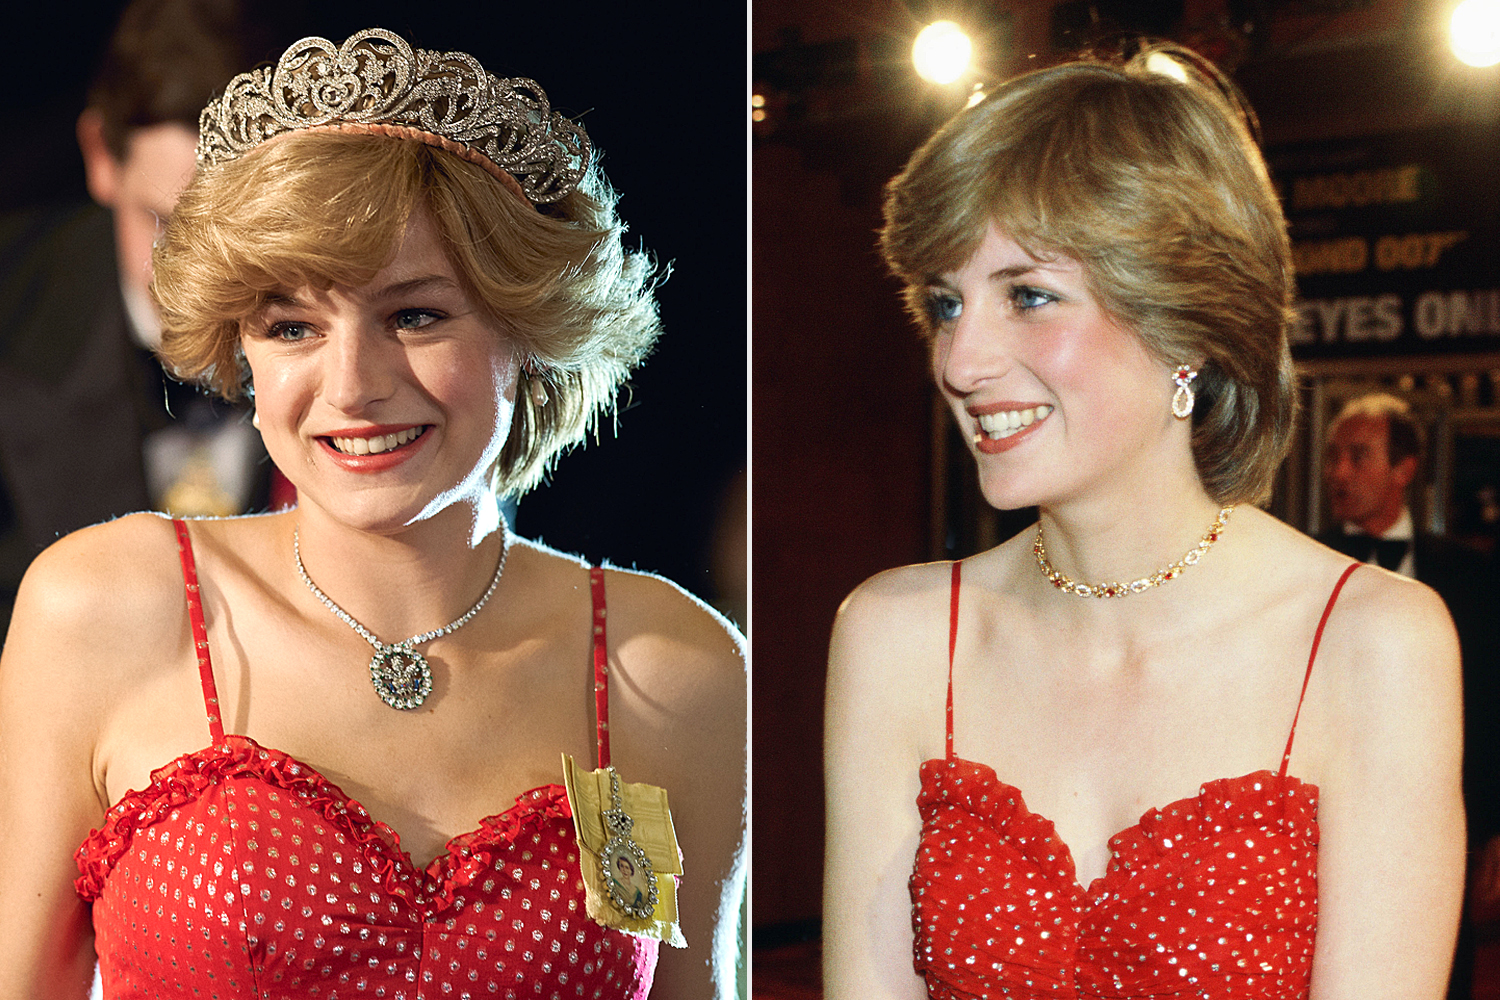 So với phiên bản gốc, The Crown đã thêm một vương miện và vòng cổ phù hợp hơn với chiếc váy chấm bi đỏ của 'Công nương Diana' phiên bản truyền hình.